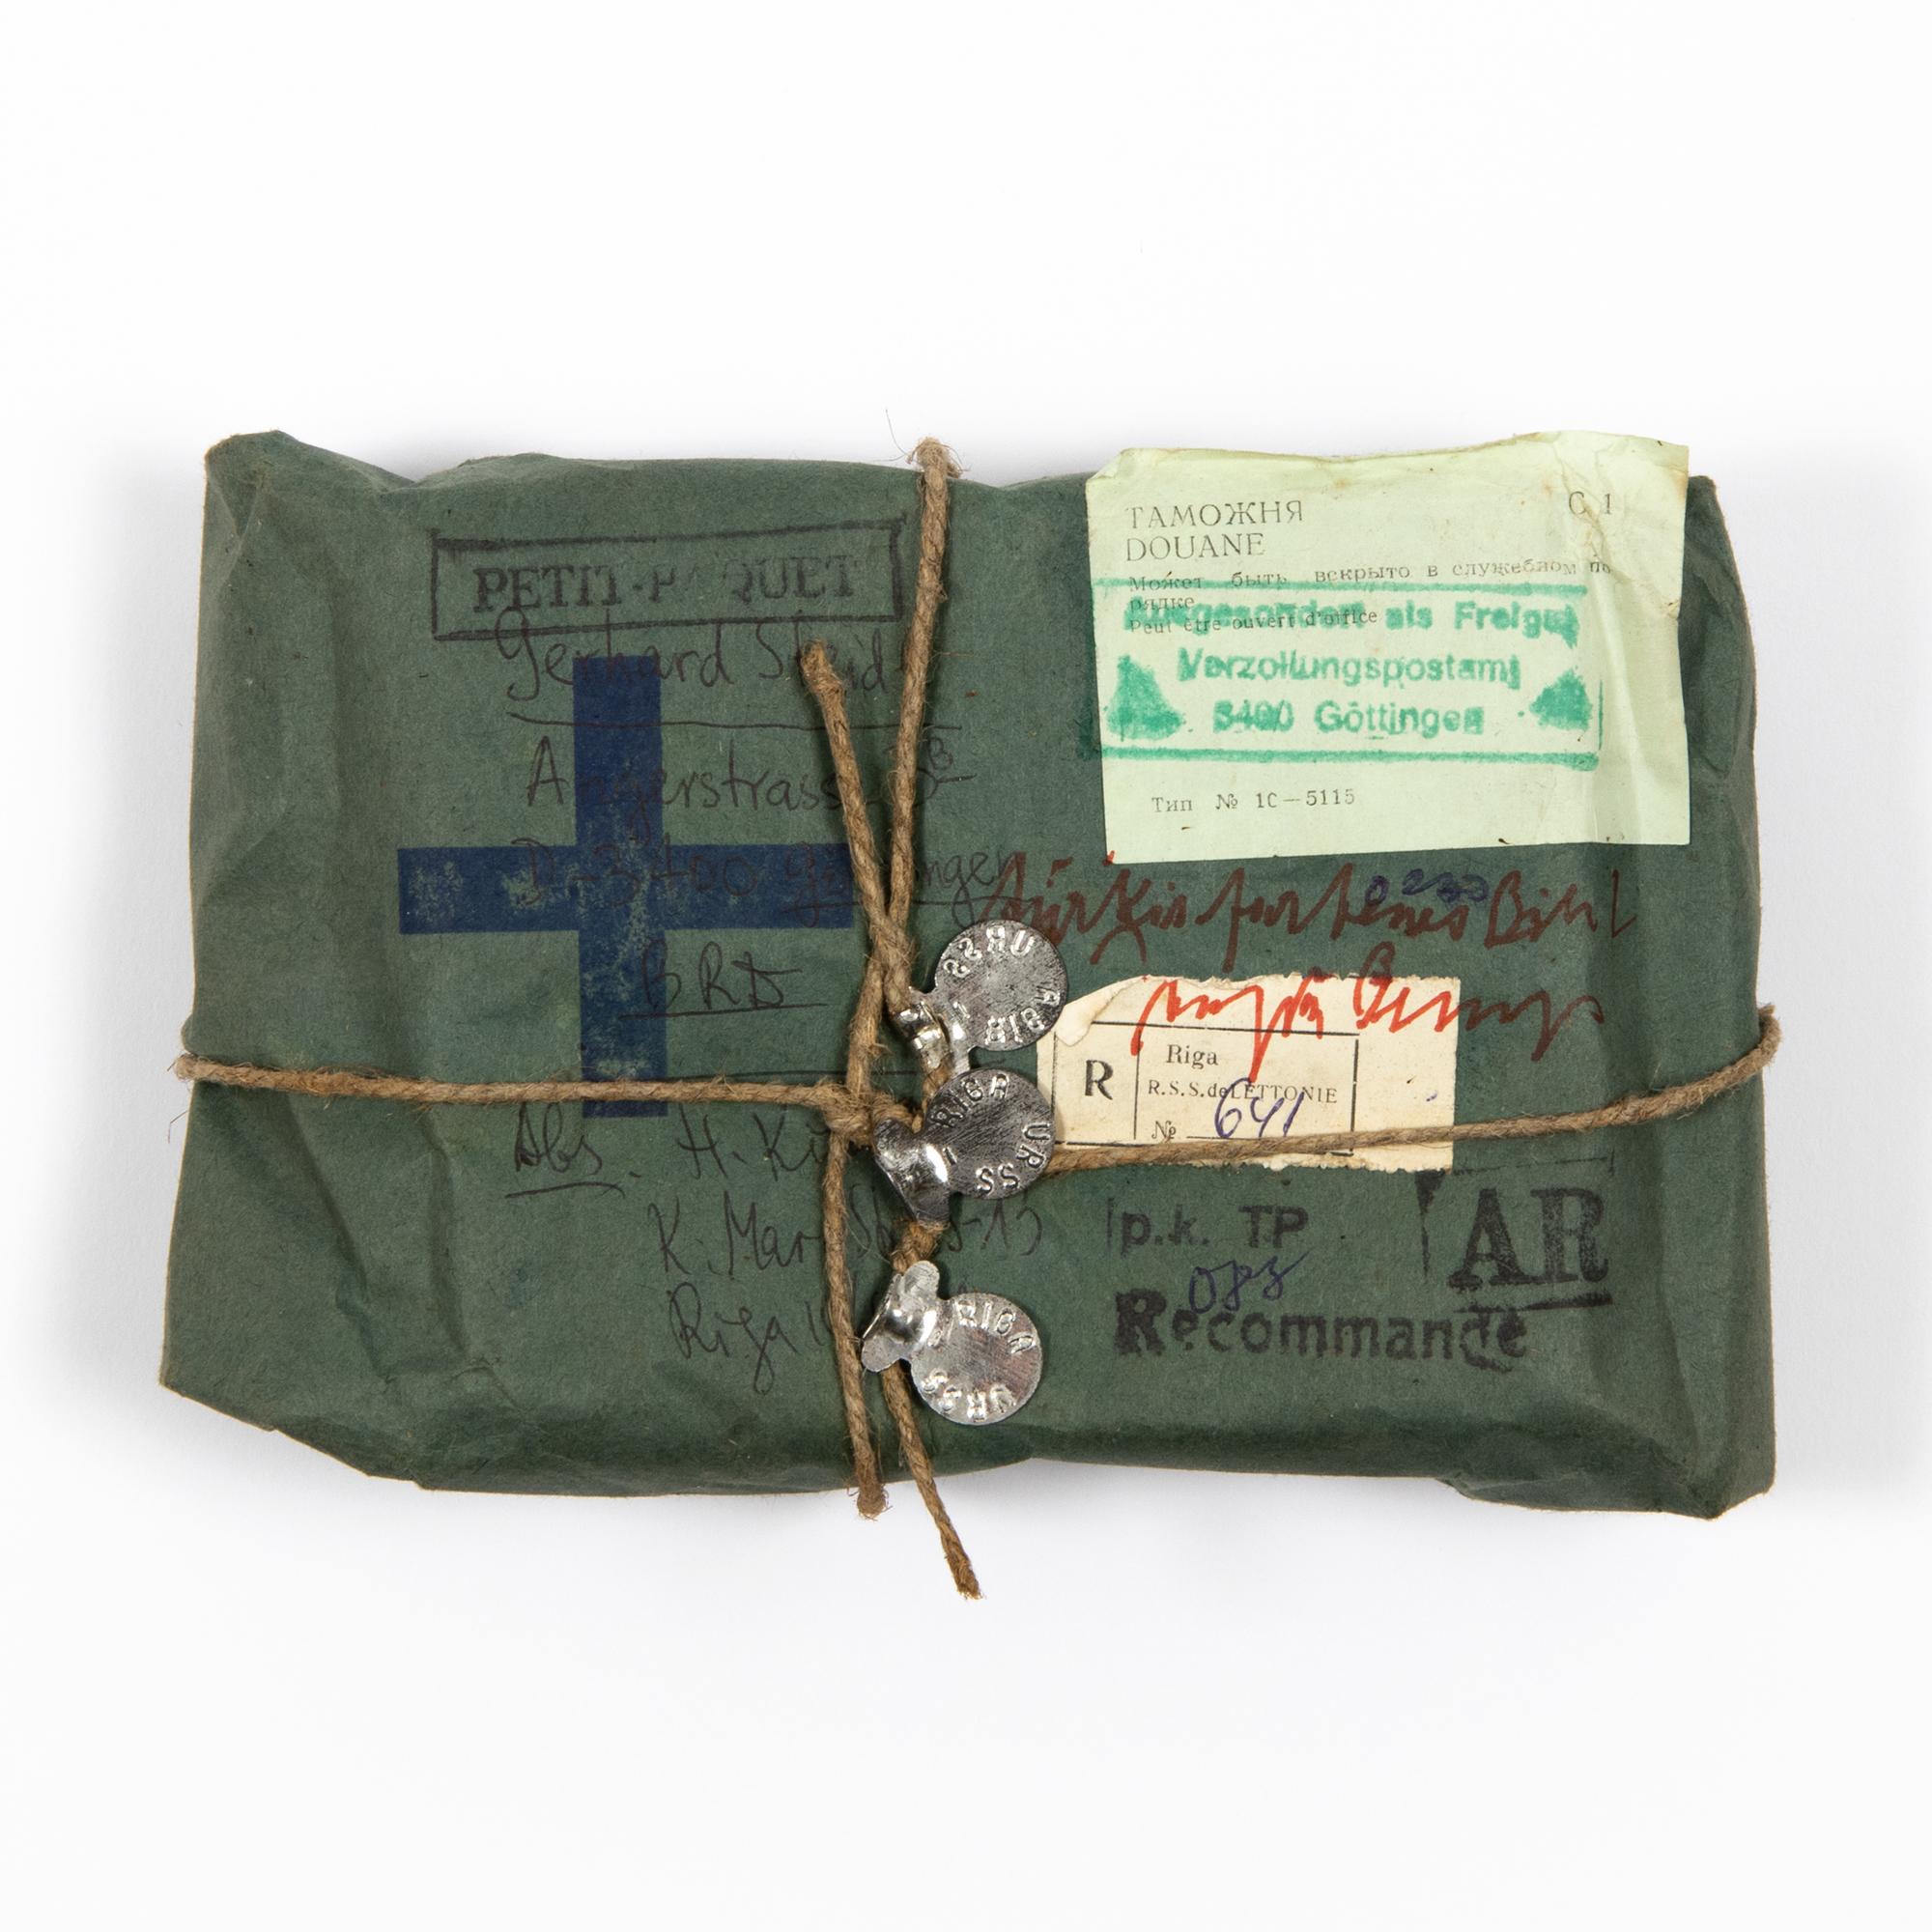 Joseph Beuys (allemand, 1921-1986)
Türkisfarbenes Bild, ca. 1974
Supports : Papier kraft, corde, crayon, encre, tampons, autocollants et étiquettes en métal
Dimensions : 5 x 18,5 x 12,3 cm : 5 x 18,5 x 12,3 cm
Œuvre d'art unique : Signé et titré à